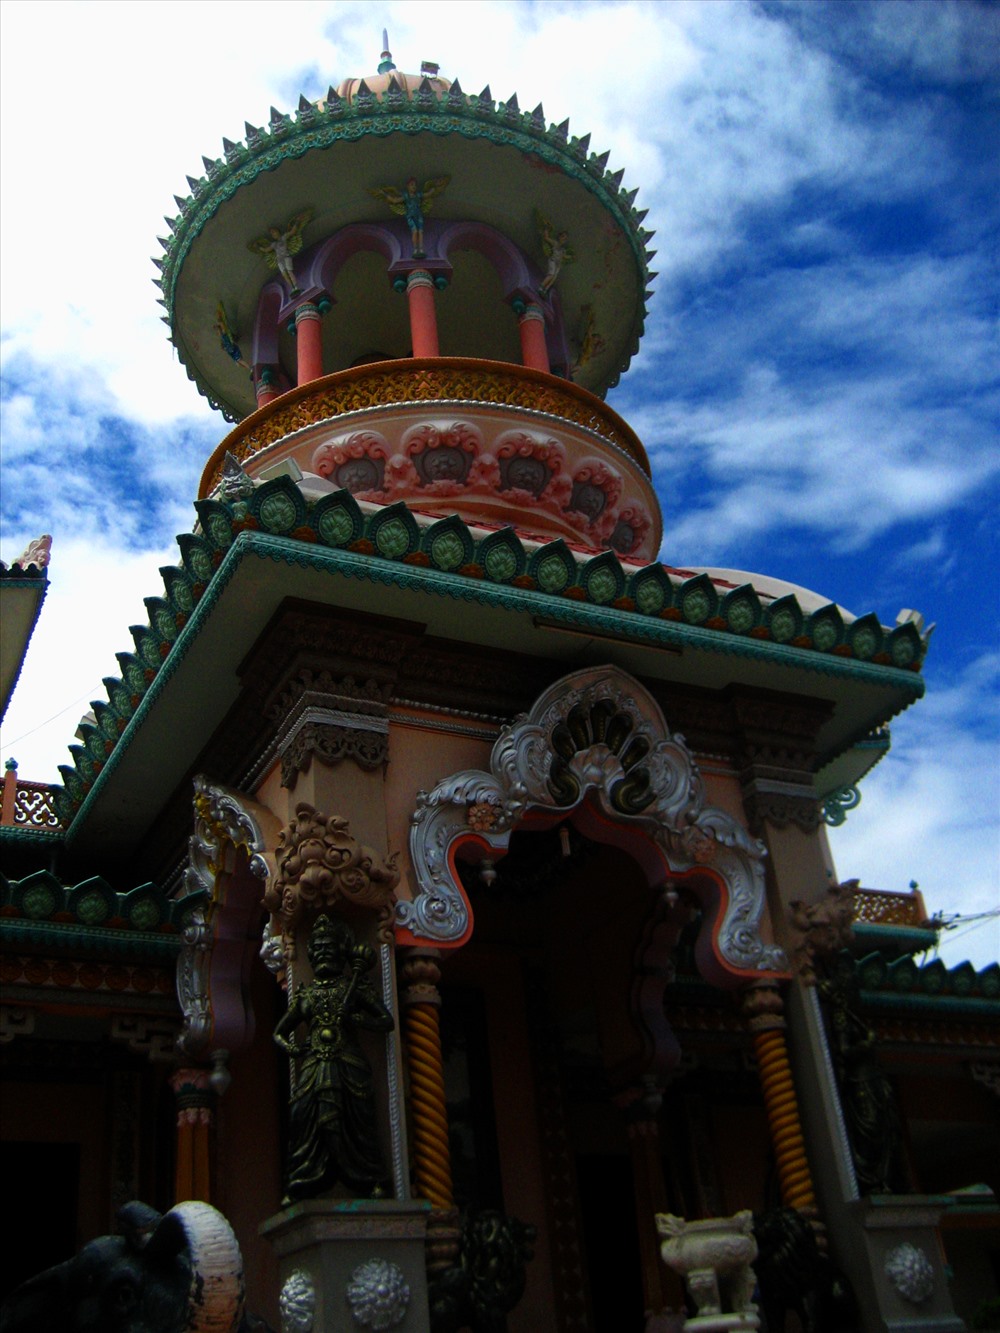 Kiến trúc đặc trưng của chùa Tây An là sự kết hợp Ấn - Việt. Ảnh: Lục Tùng